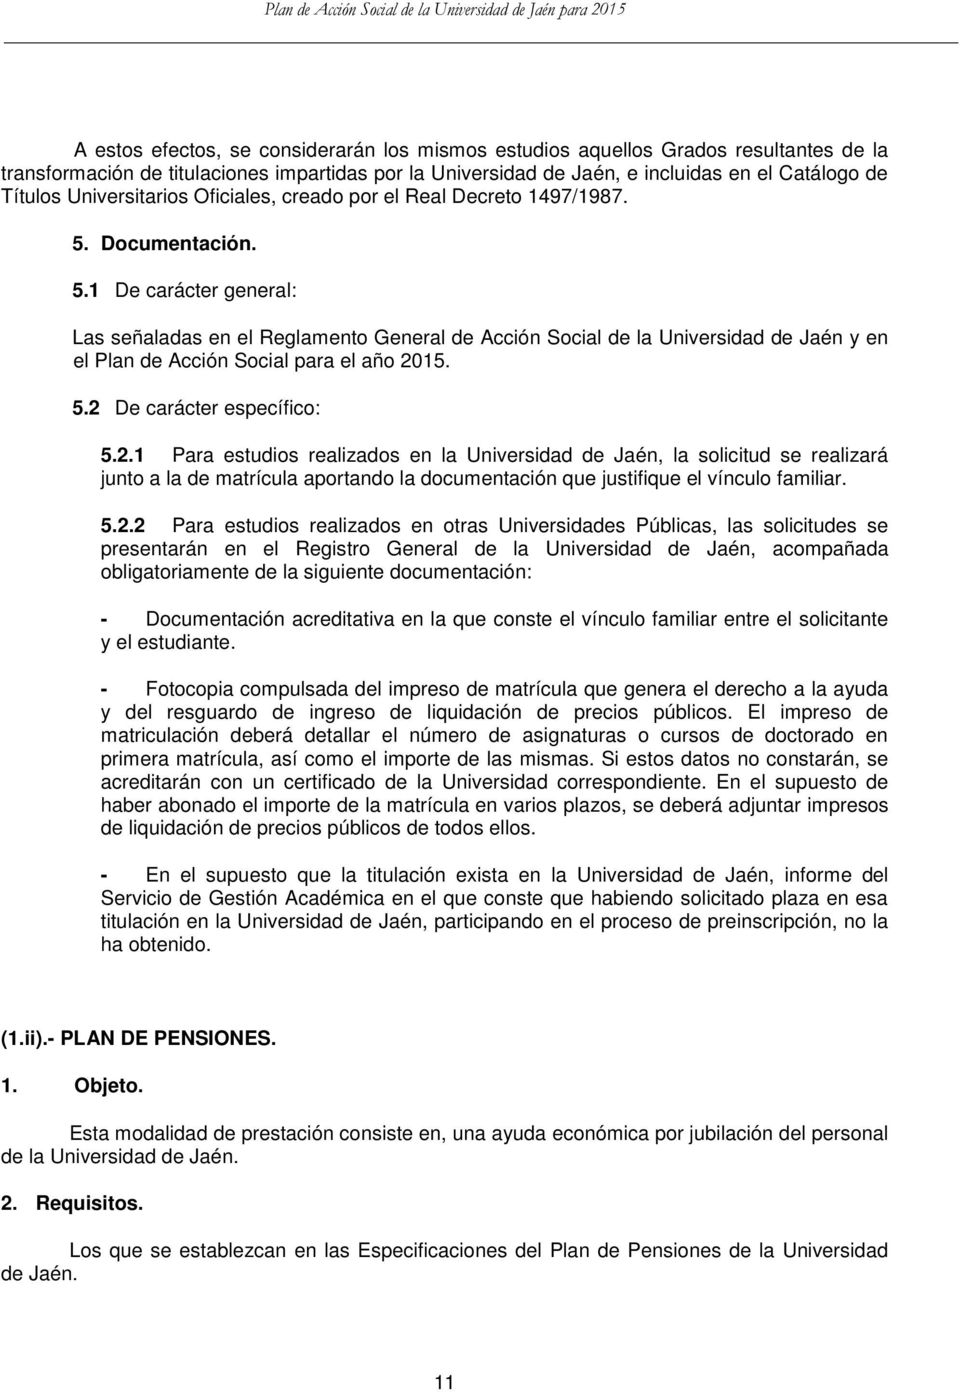 Documentación. 5.1 De carácter general: Las señaladas en el Reglamento General de Acción Social de la Universidad de Jaén y en el Plan de Acción Social para el año 2015. 5.2 De carácter específico: 5.